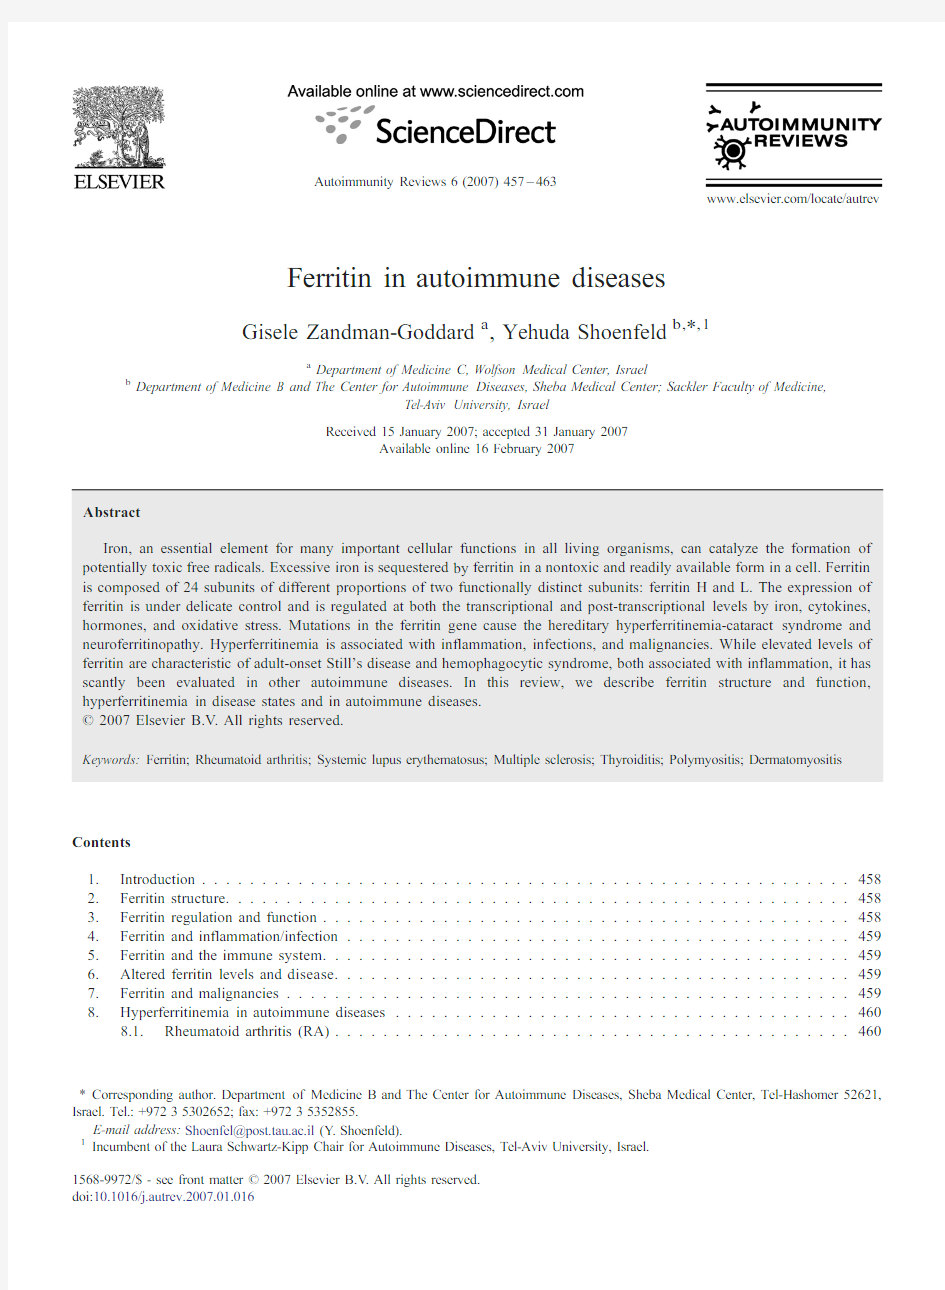 铁蛋白在自身免疫病中的意义Ferritin in autoimmune diseases